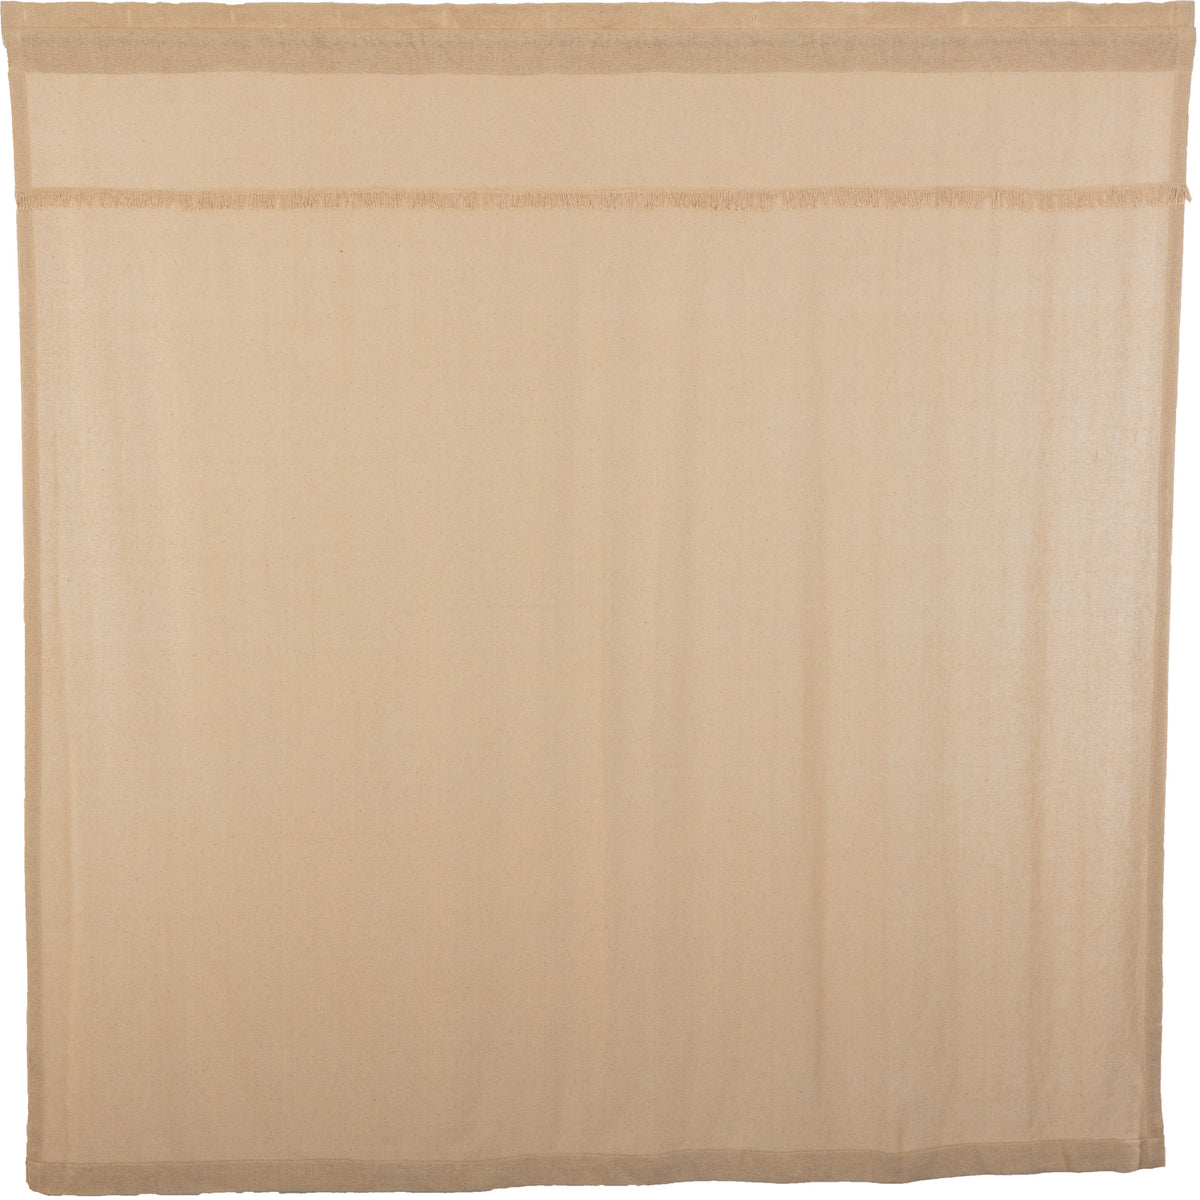 Burlap Vintage Shower Curtain 72x72